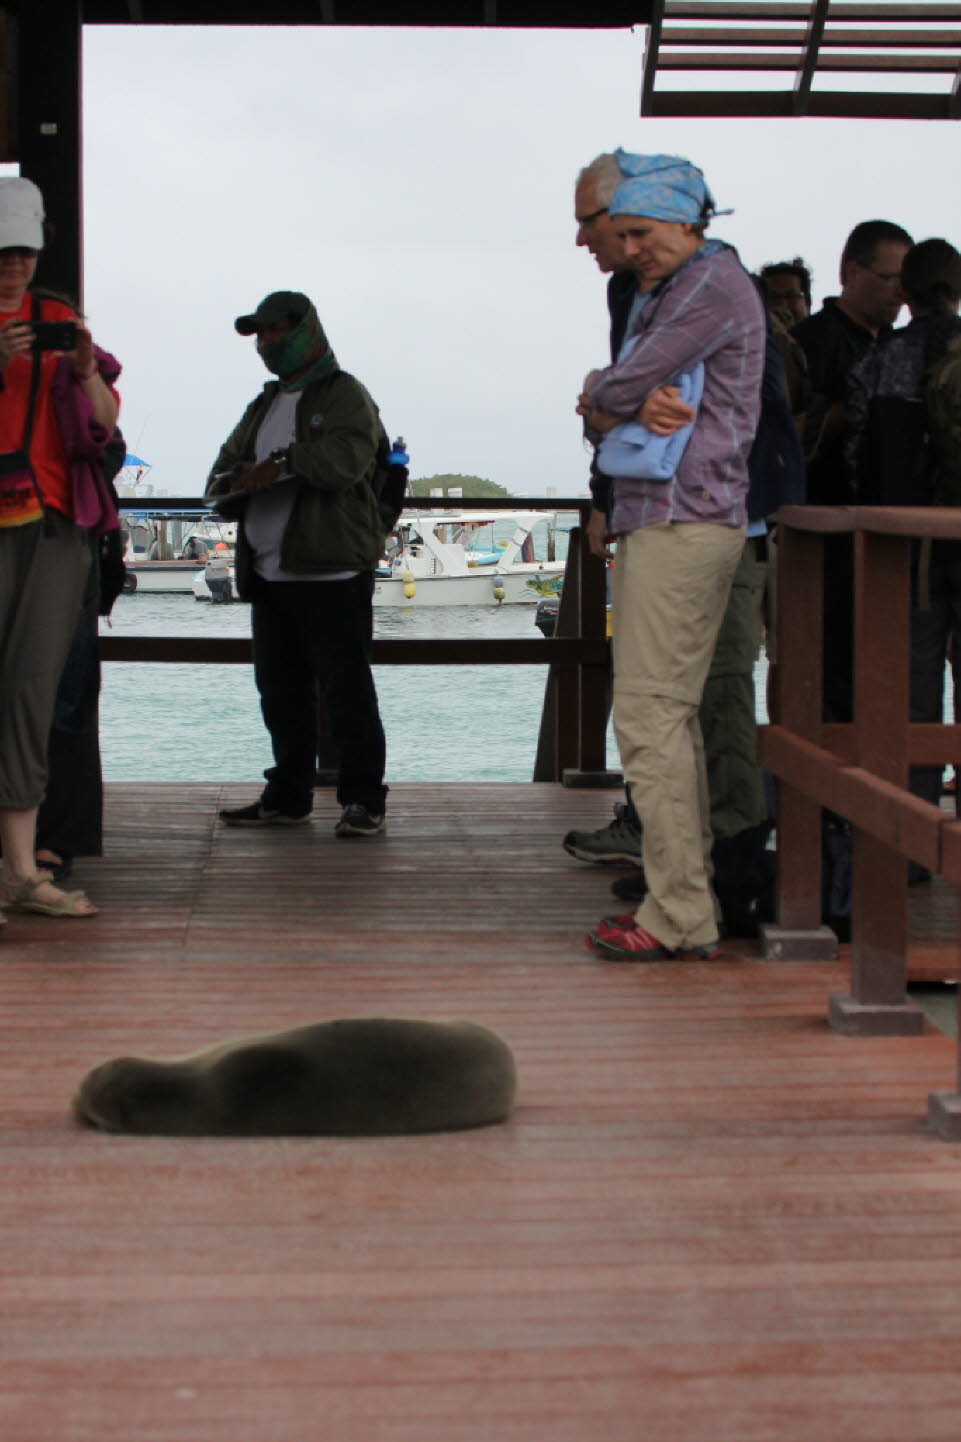 Begrüßung durch Seelöwen: Der Galápagos-Seelöwe gehört zur Familie der Ohrenrobben. Er lebt ausschließlich auf den Galápagosinseln. Eng verwandt mit dem Kalifornischen Seelöwen unterscheidet er sich durch eine längere und spitzere Schnauze. Die stattliche